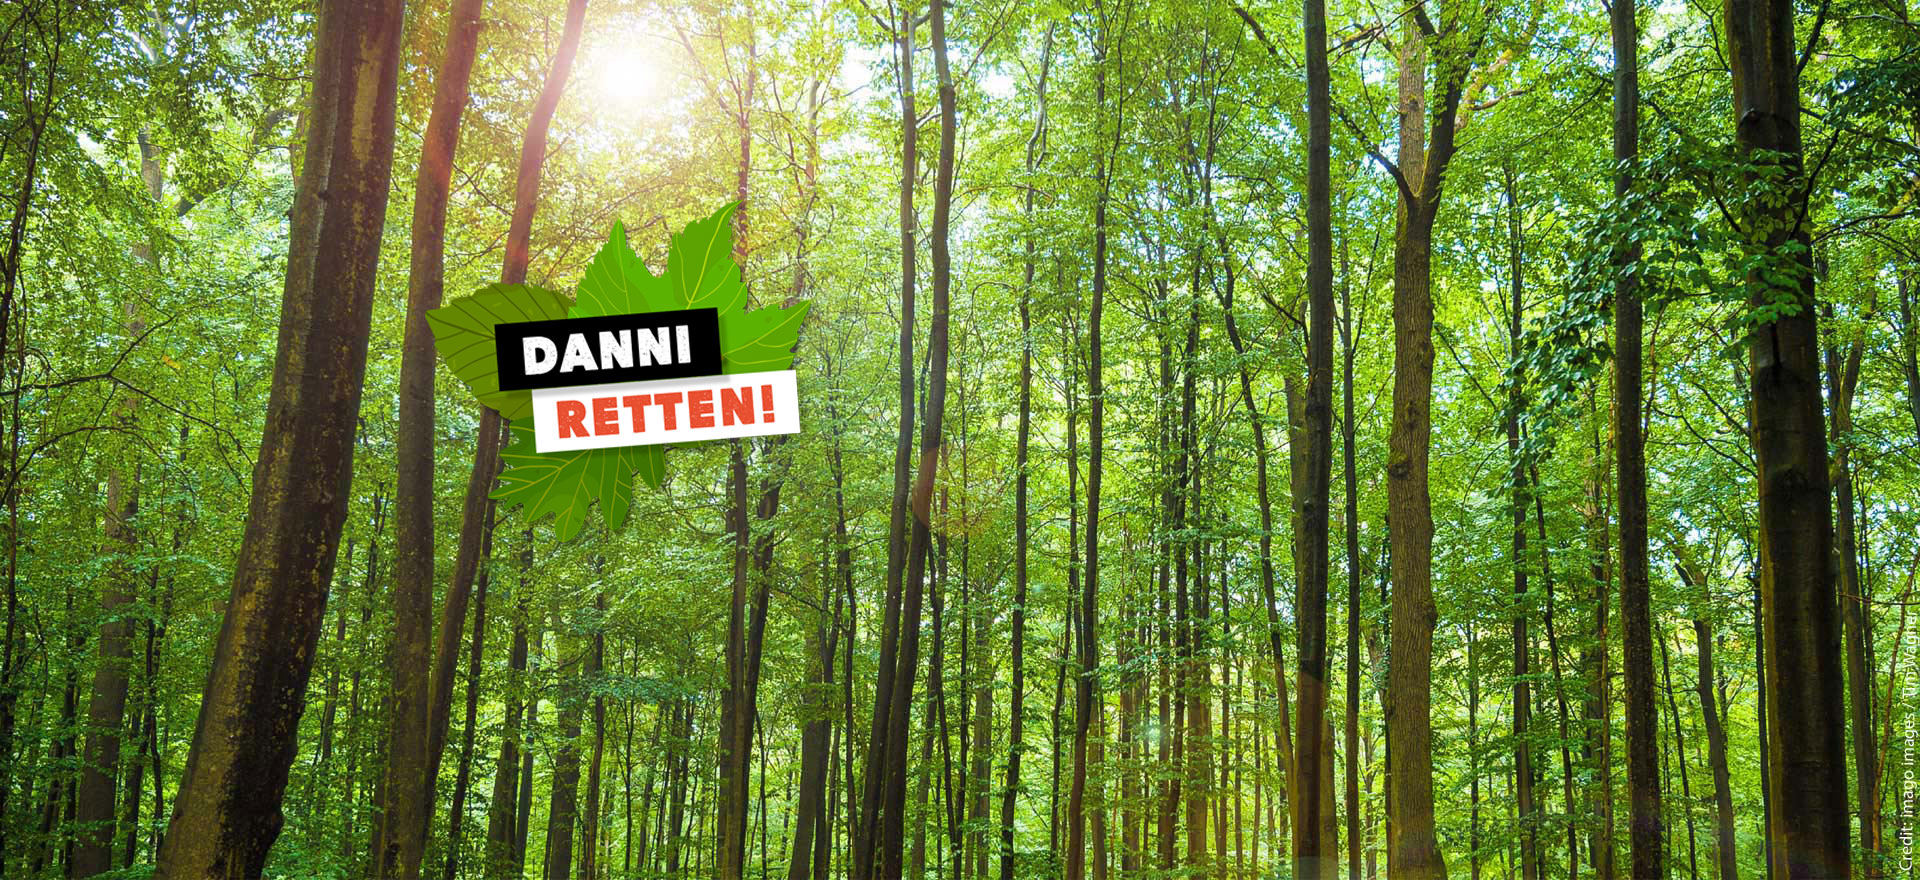 Alter Wald statt neue Straßen! Danni retten! Credit: imago images / Tim Wagner